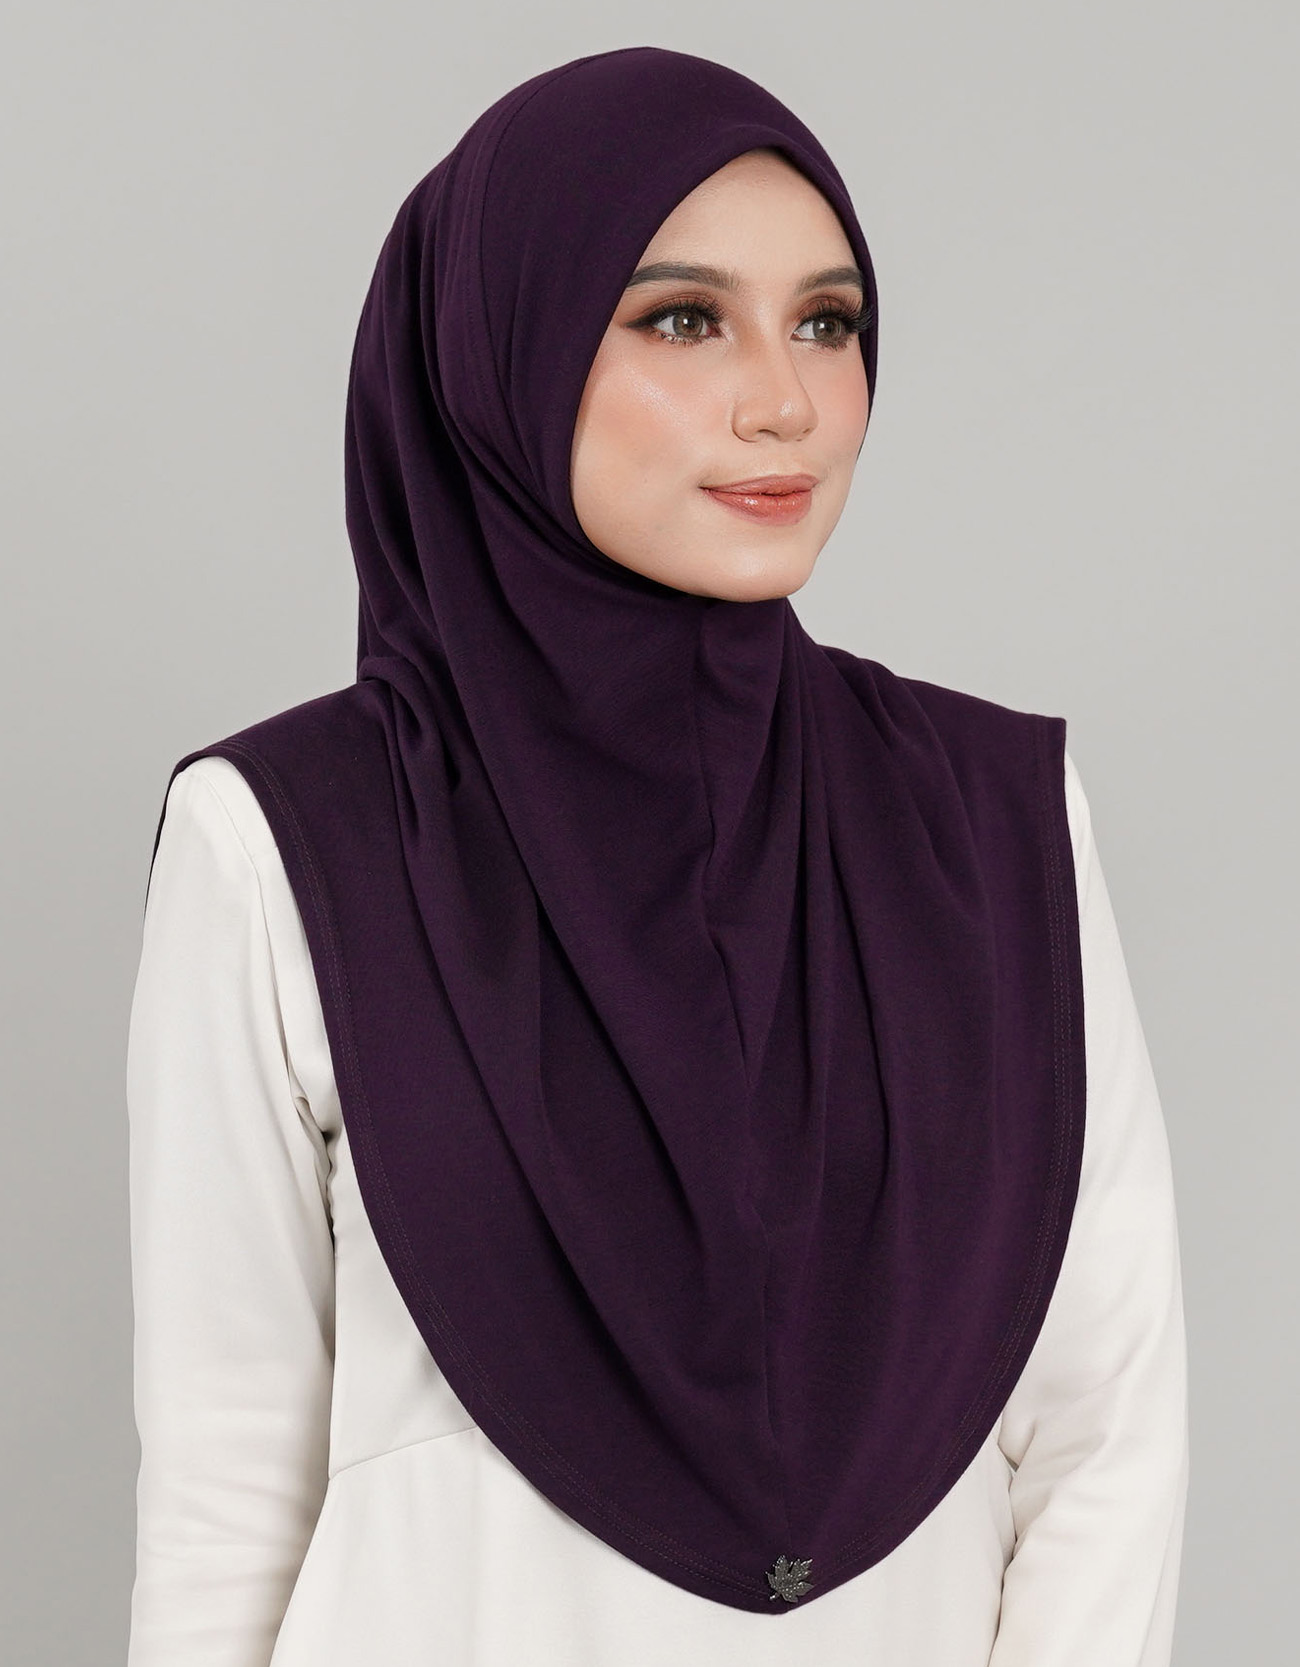 Express Hijab Damia Plain - 01 Eggplant&w=300&zc=1